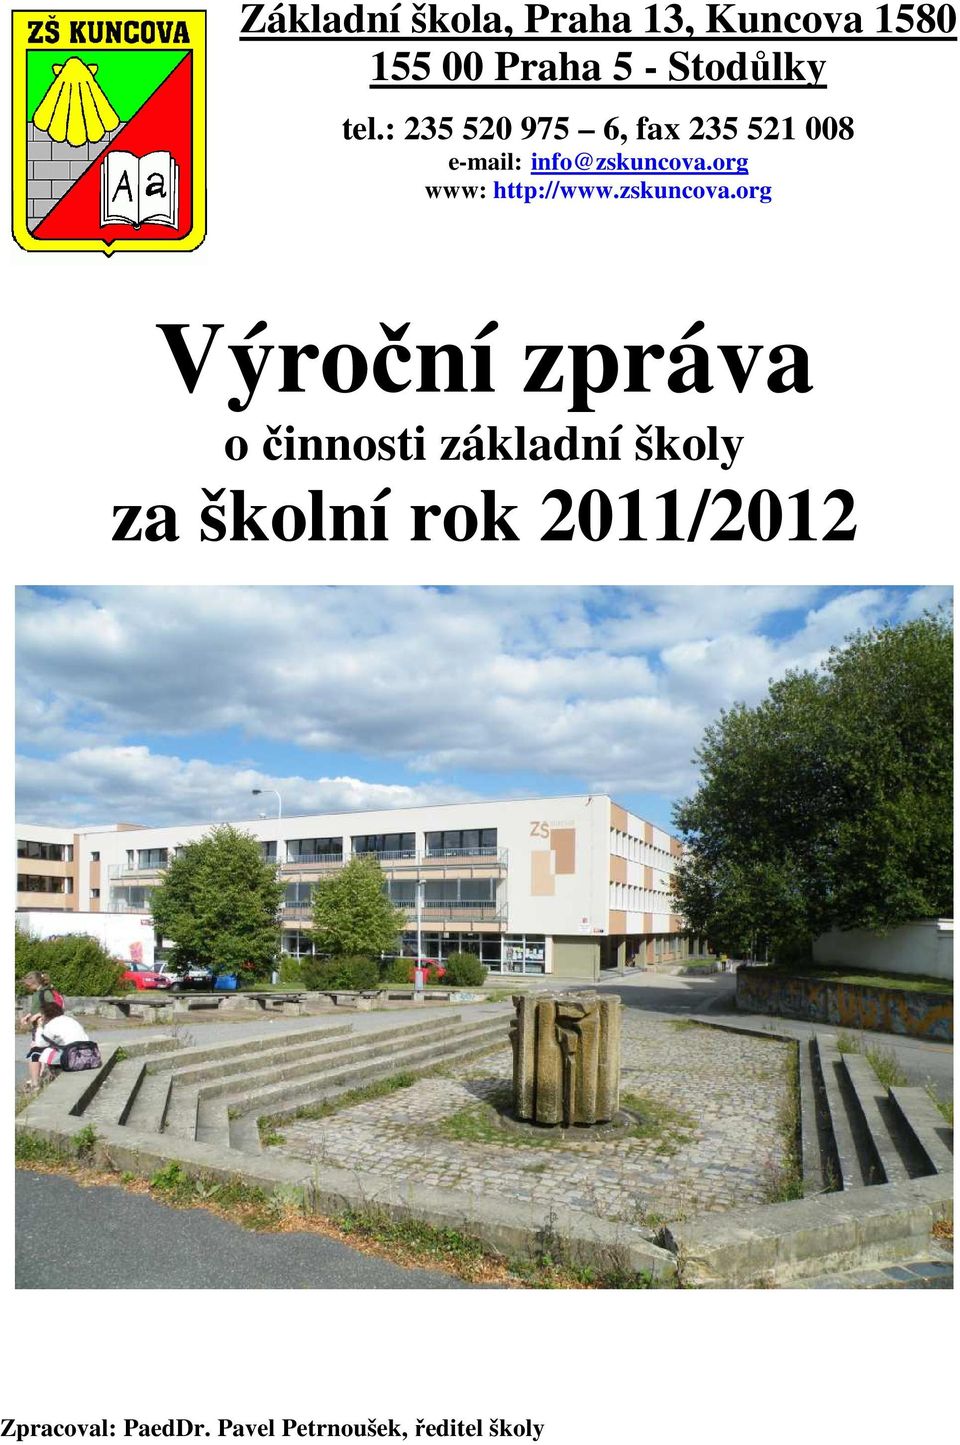 org www: http://www.zskuncova.